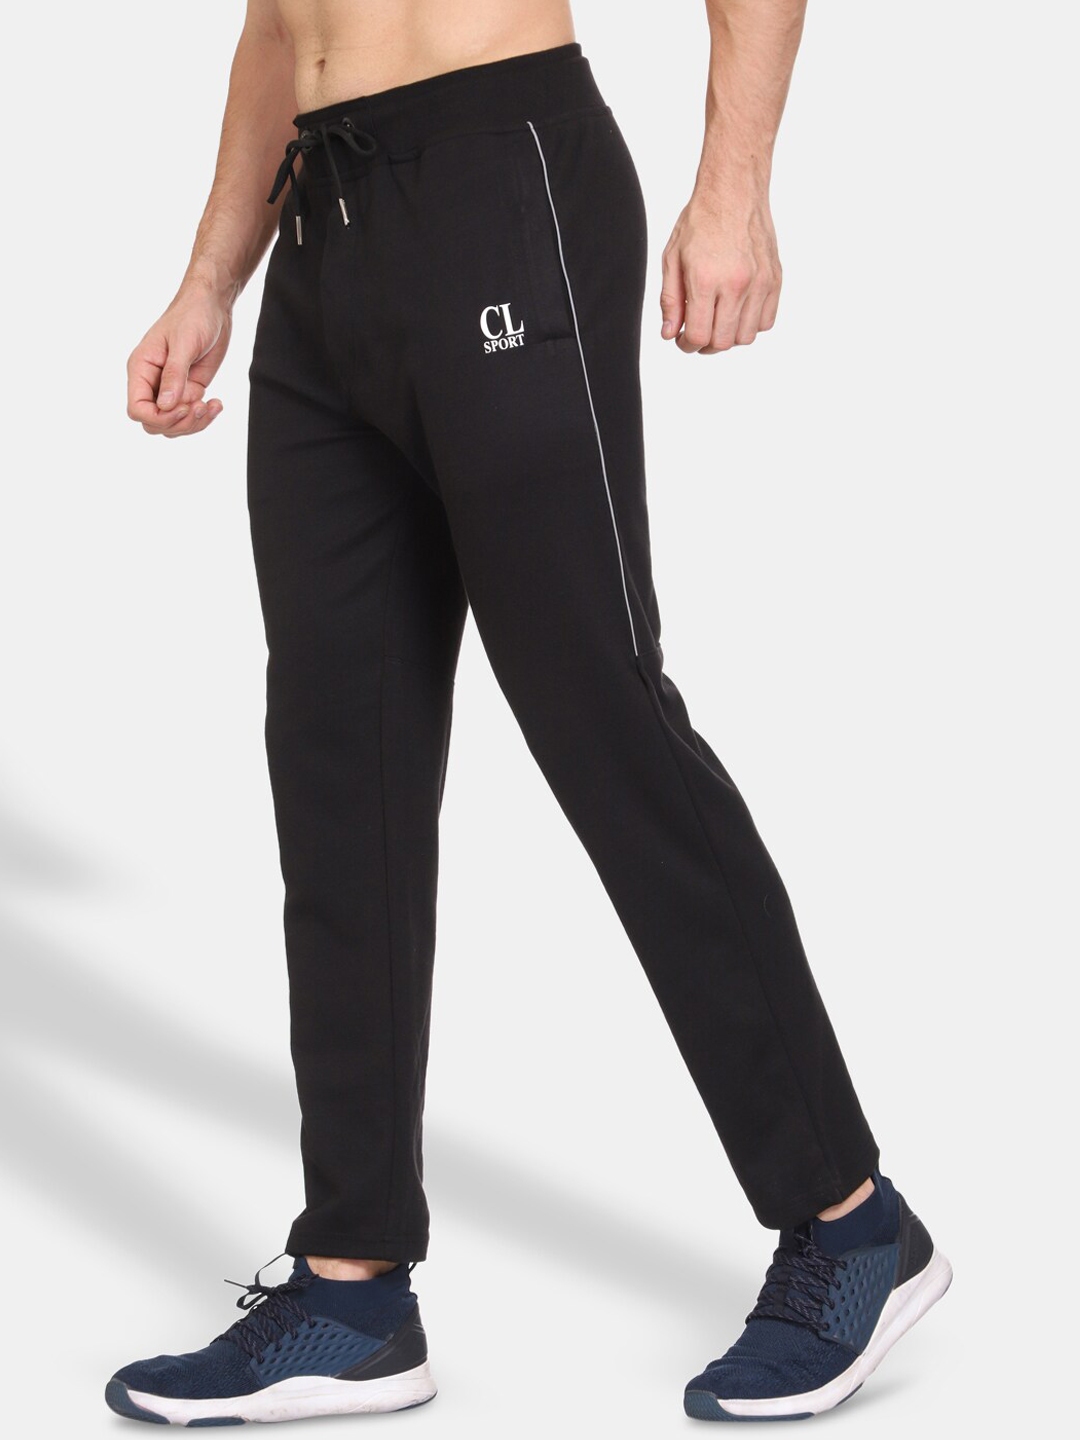 Buy CL SPORT Men Black Solid Track Pants - Track Pants for Men 16378094 ...